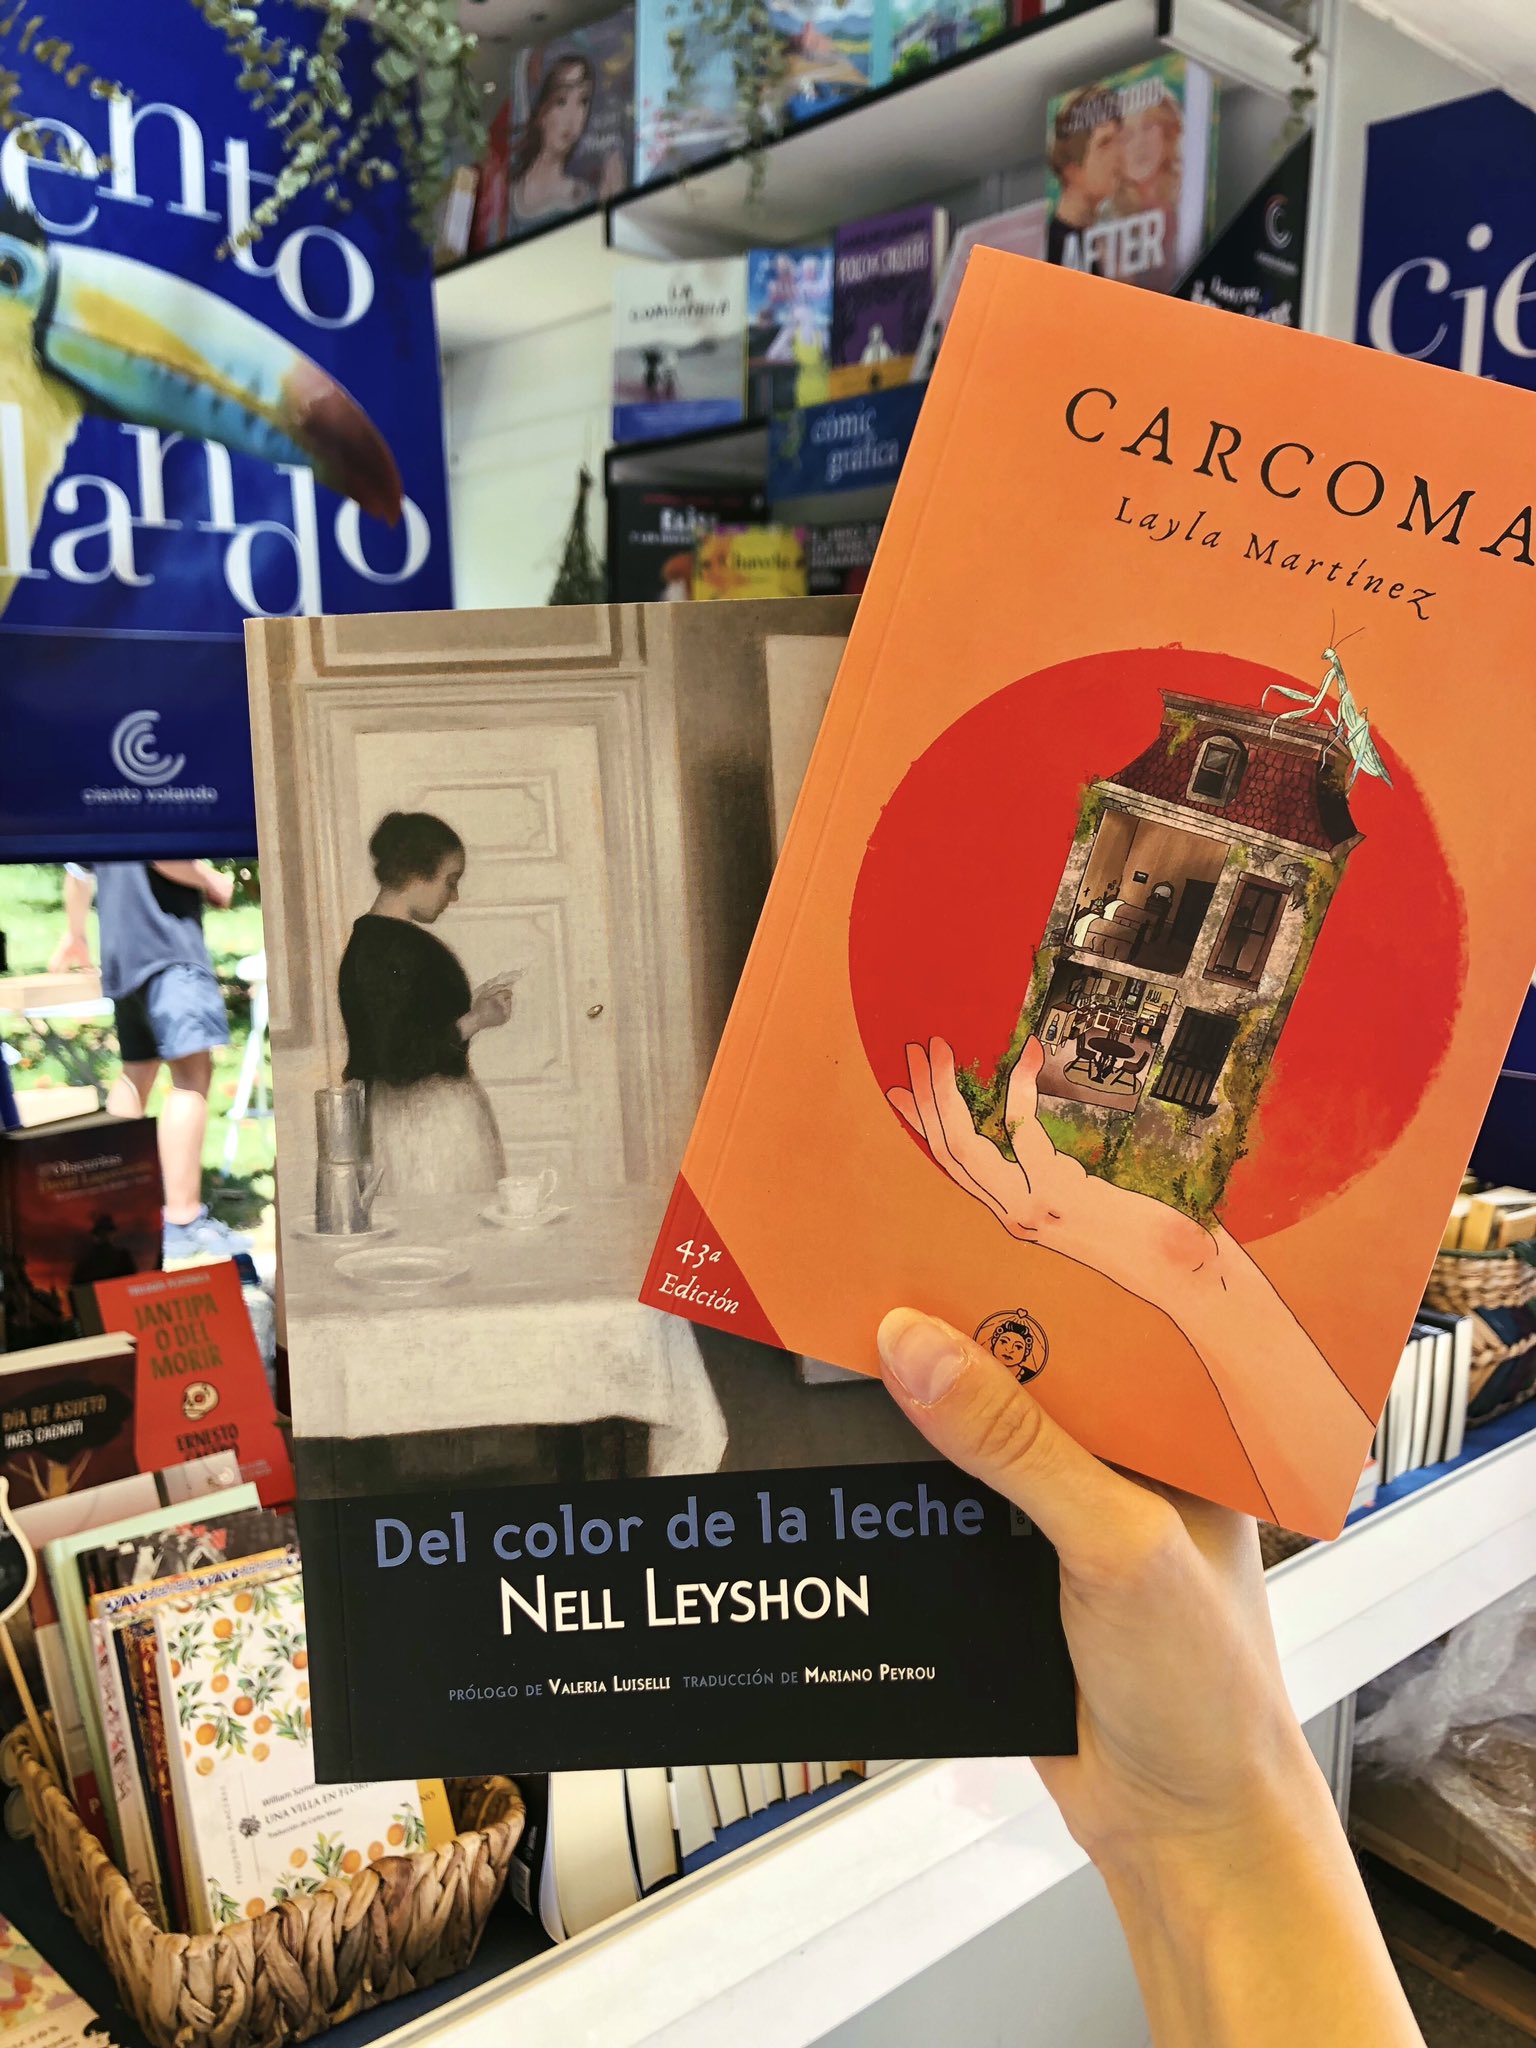 𝐂𝐢𝐞𝐧𝐭𝐨 𝐯𝐨𝐥𝐚𝐧𝐝𝐨 on X: Pasado el ecuador de la @FLMadrid, estos  dos son nuestros libros más vendidos: la «Carcoma» de Layla Martínez  (@AmordemadreEd) y «Del color de la leche» (@sextopiso_es). ❤️   /